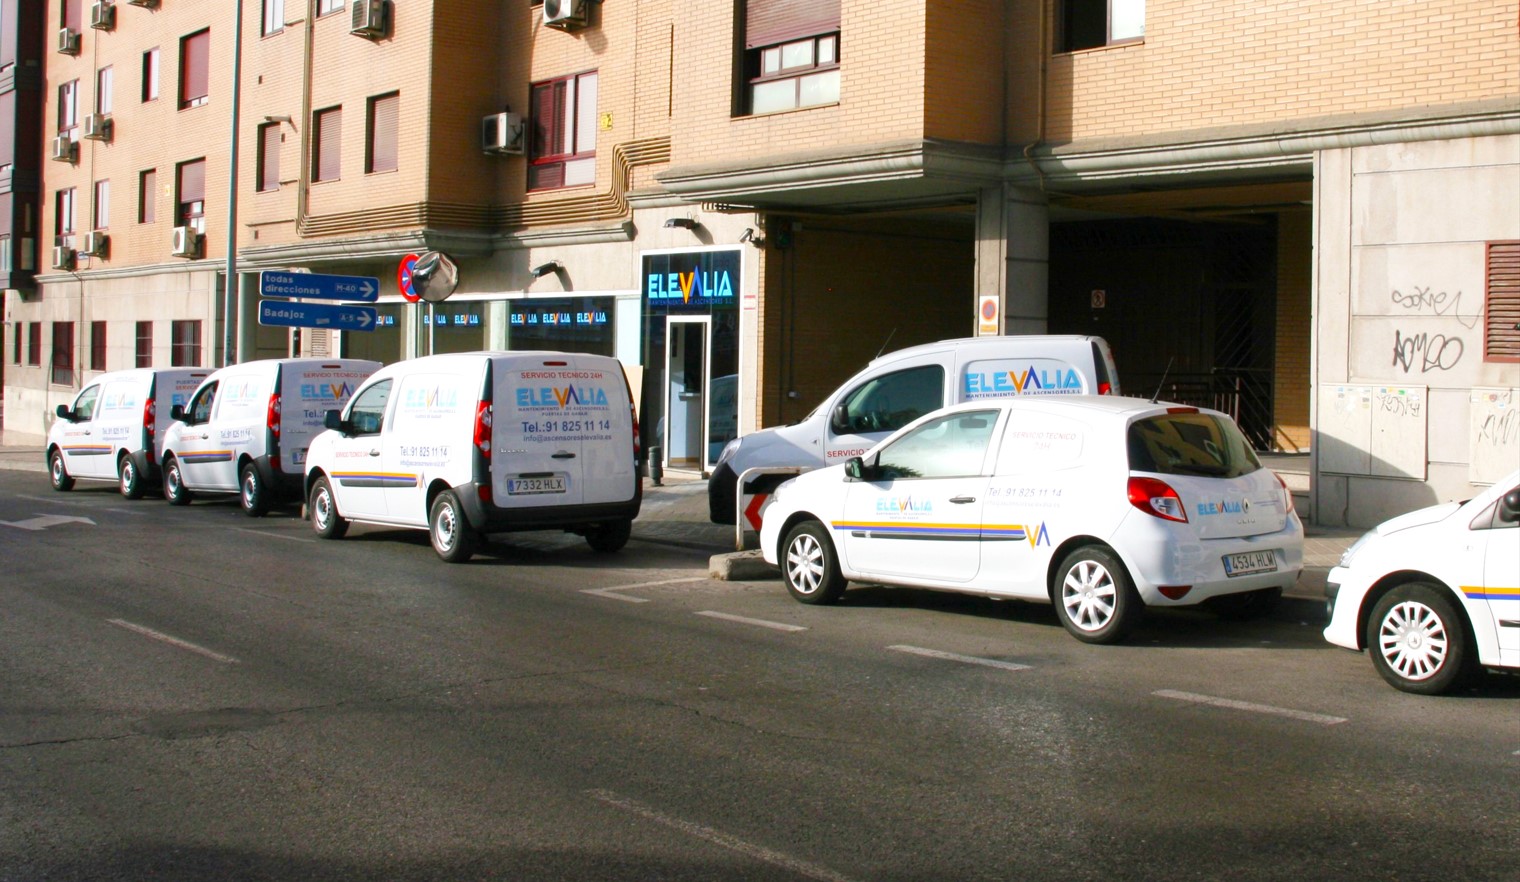 Vehículos de mantenimiento de Elevalia delante de la oficina de Madrid